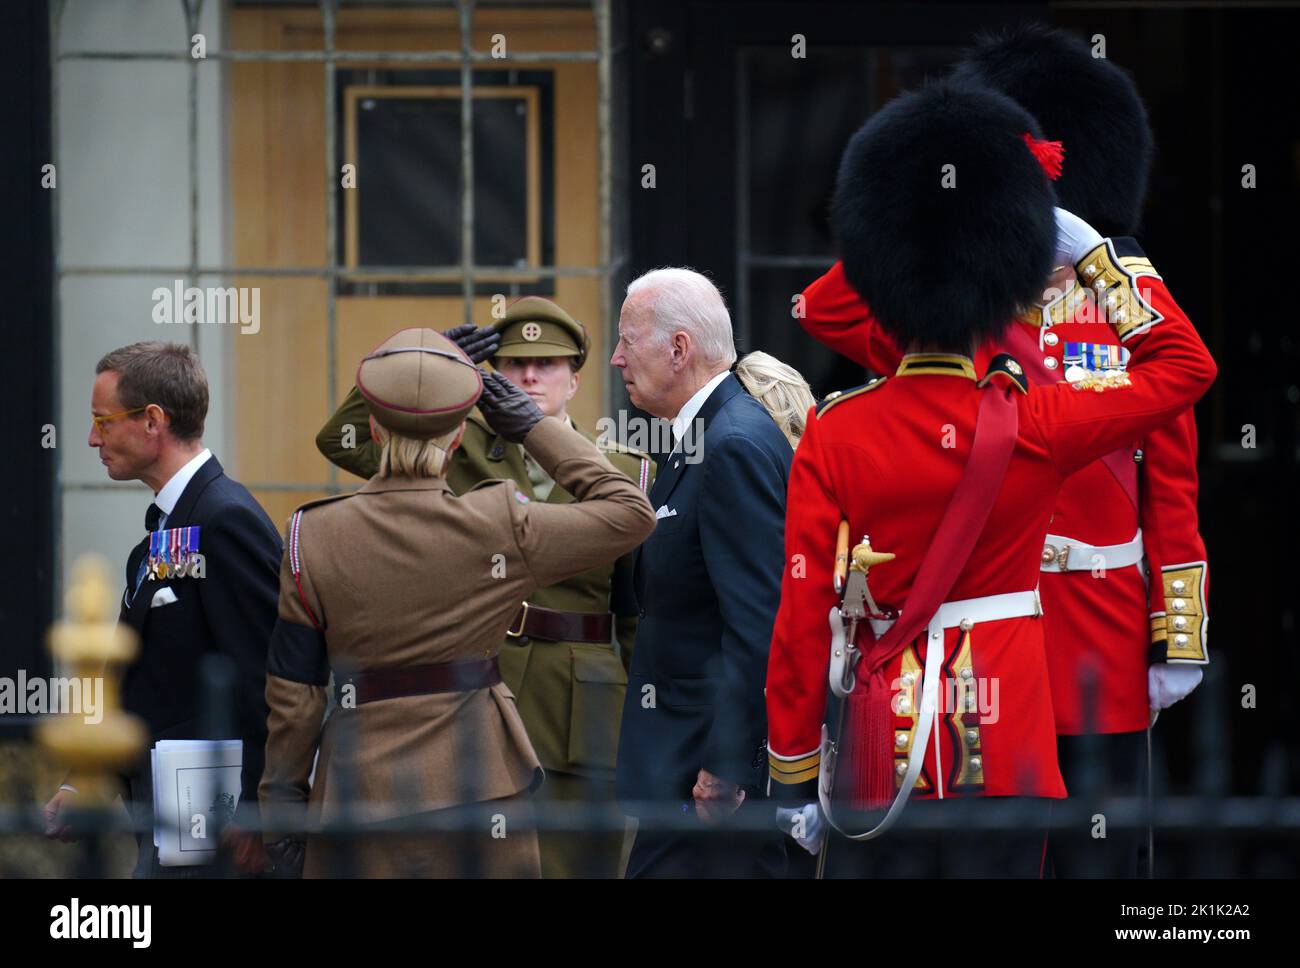 LE président AMÉRICAIN Joe Biden accompagné de la première dame Jill Biden arrivant au funérailles d'État de la reine Elizabeth II, qui s'est tenu à l'abbaye de Westminster, à Londres. Date de la photo: Lundi 19 septembre 2022. Banque D'Images